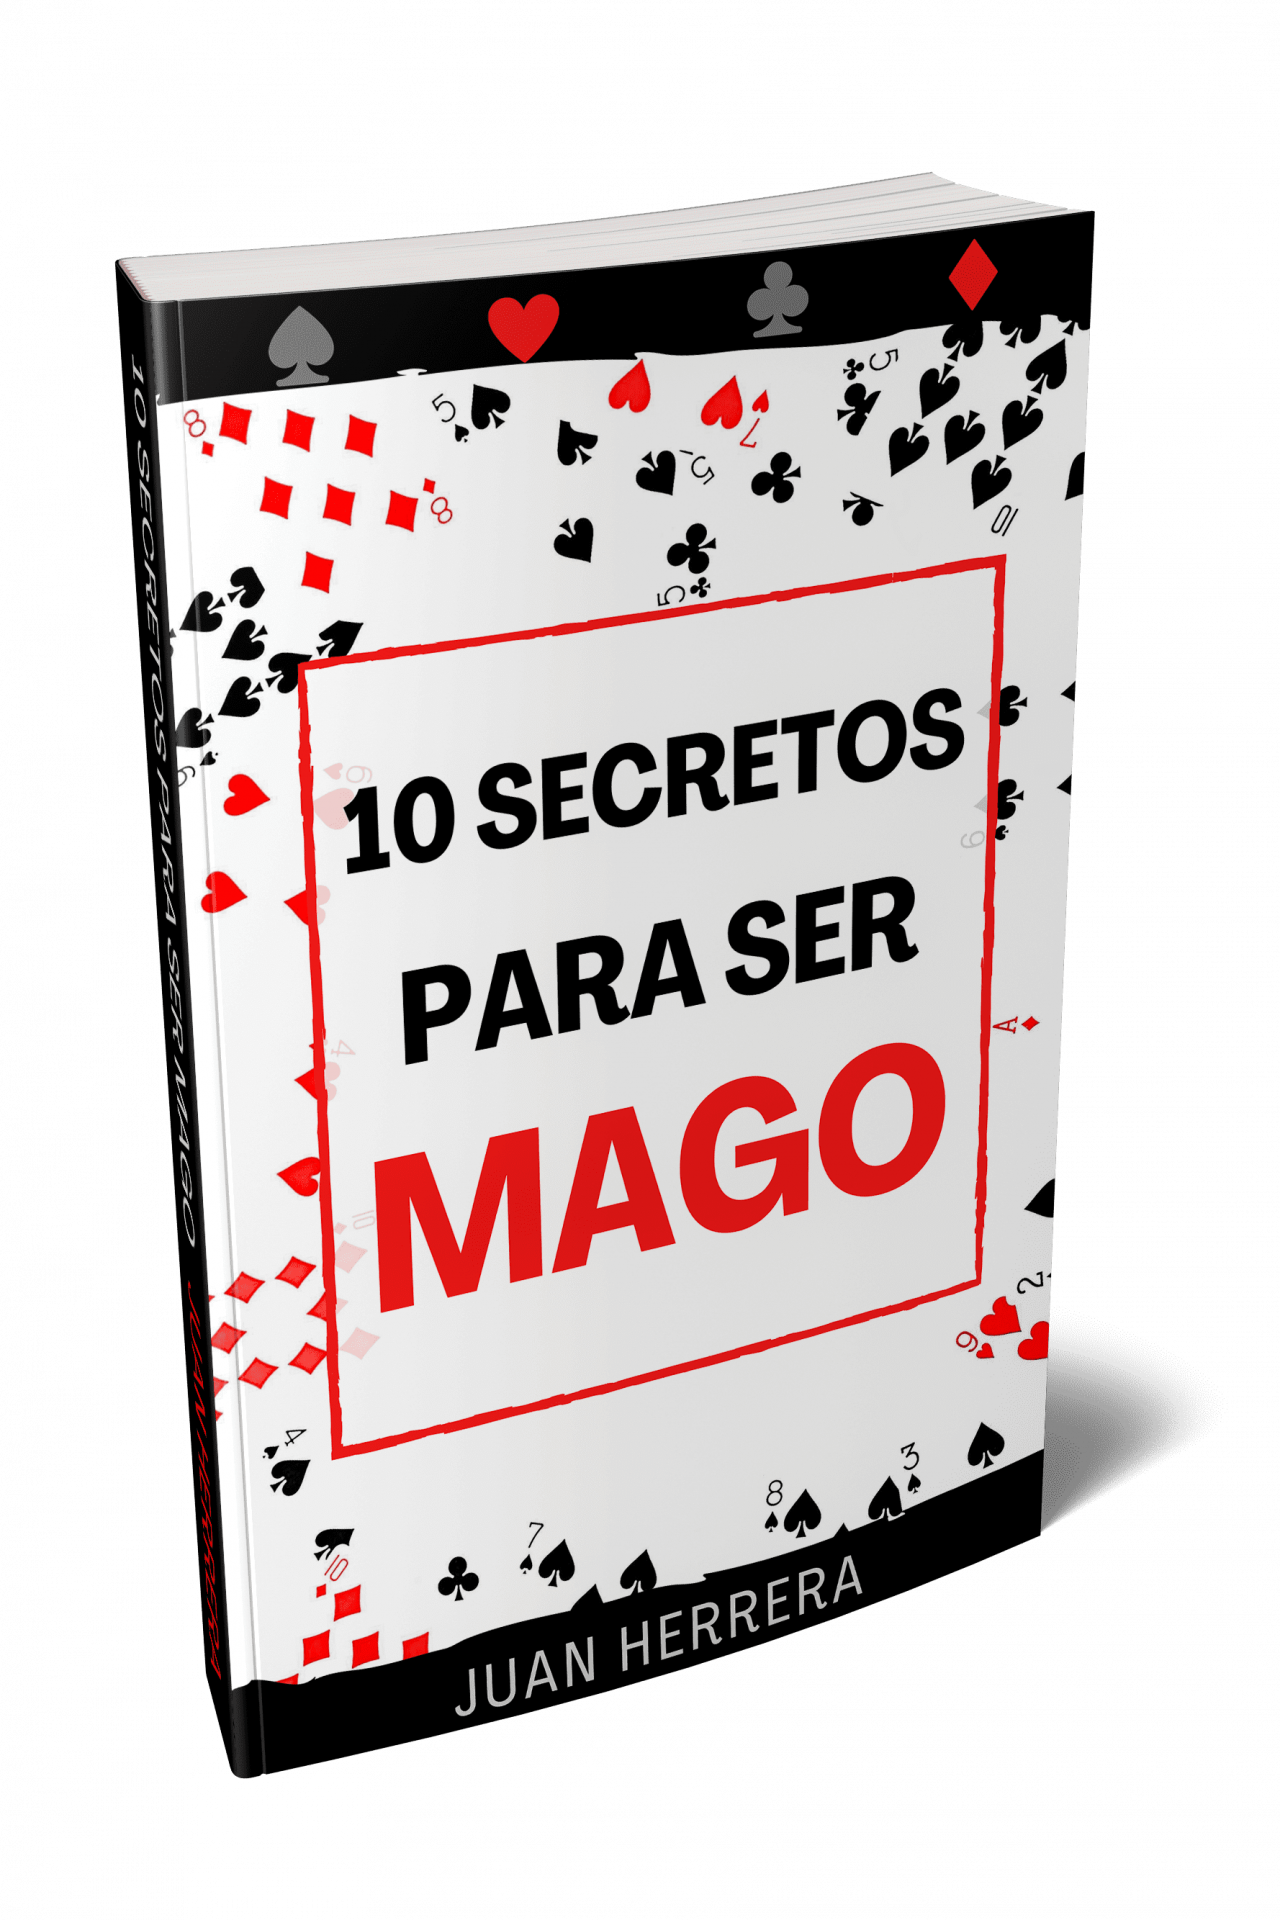 10 secretos para ser mago